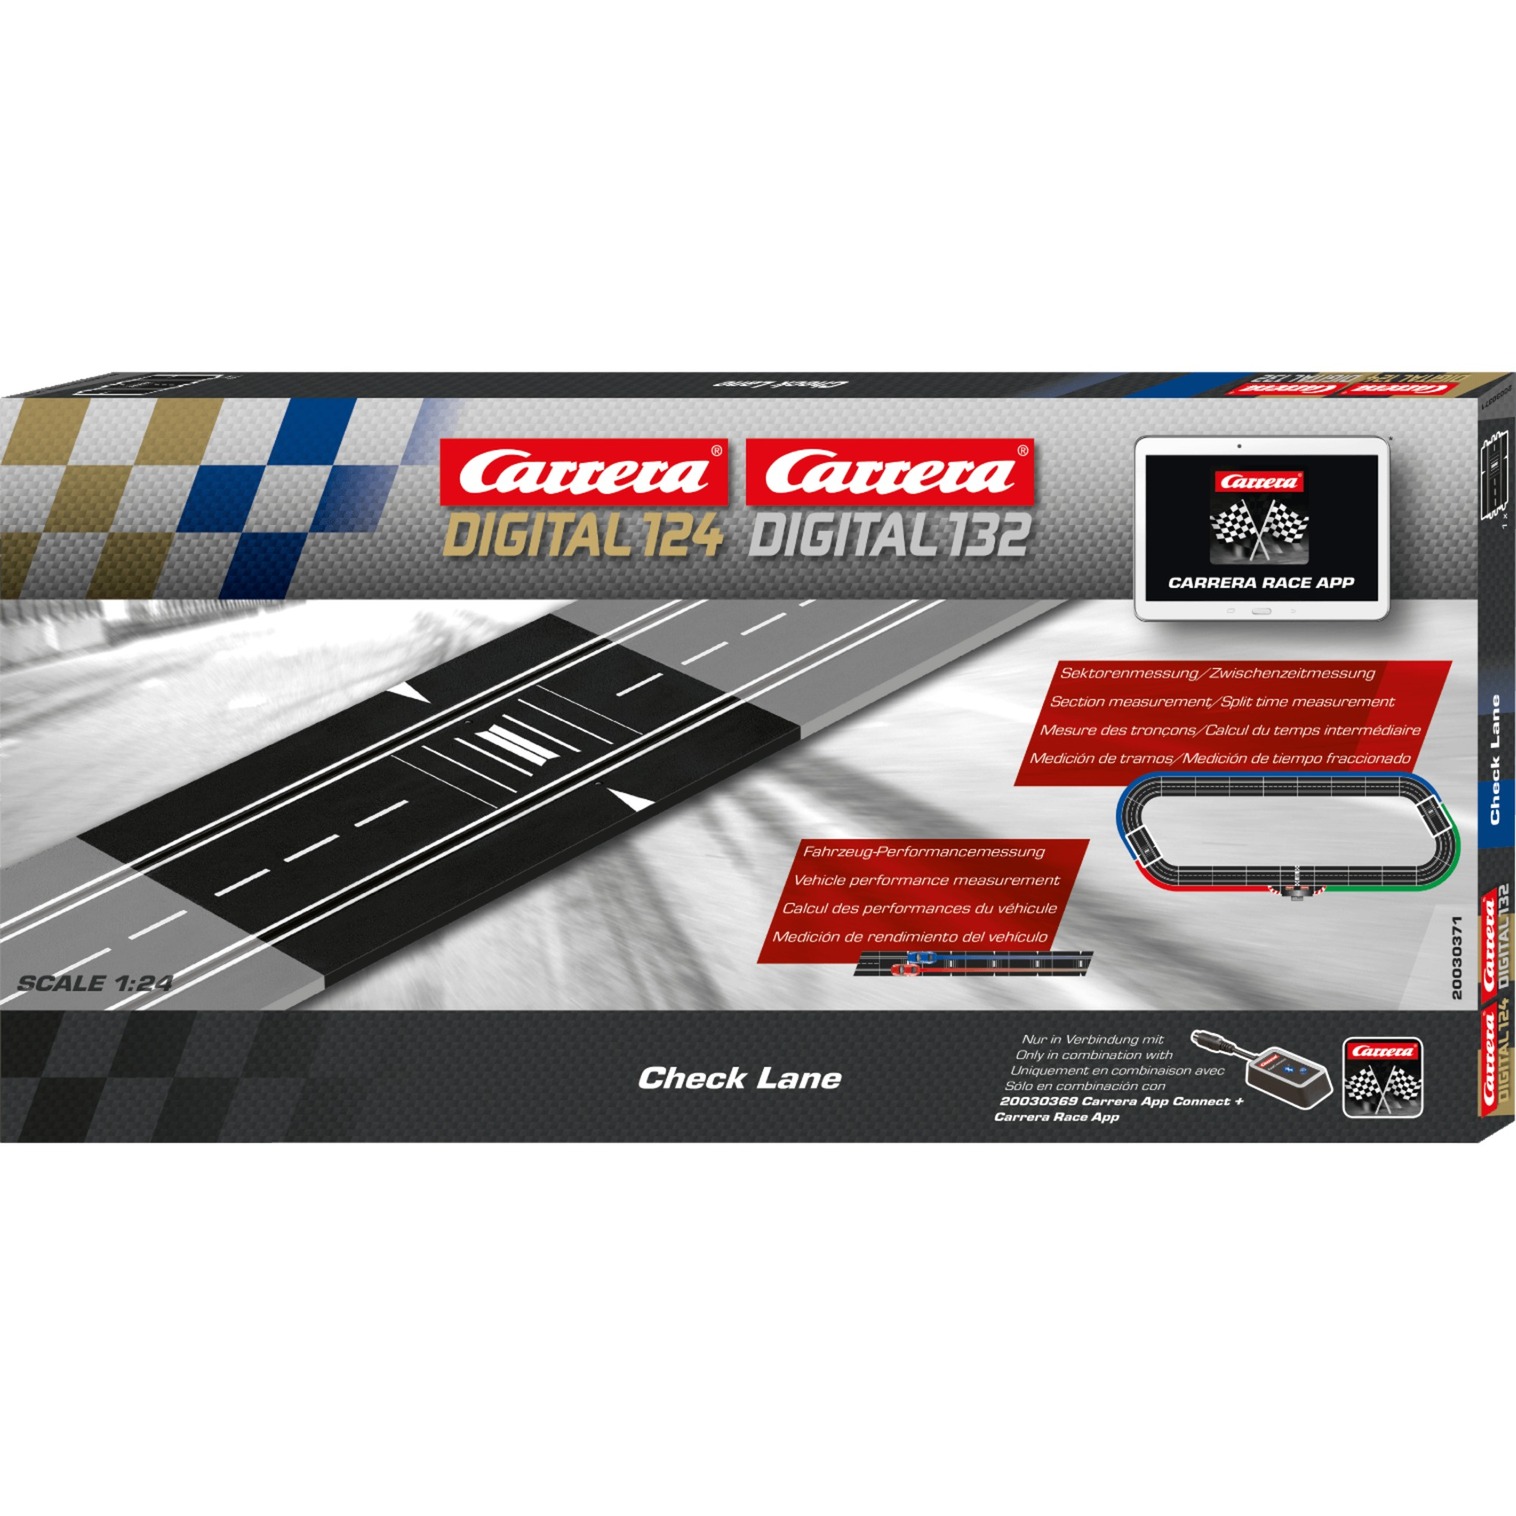 Spielzeug: Carrera DIGITAL 124/132 Check Lane, Schiene